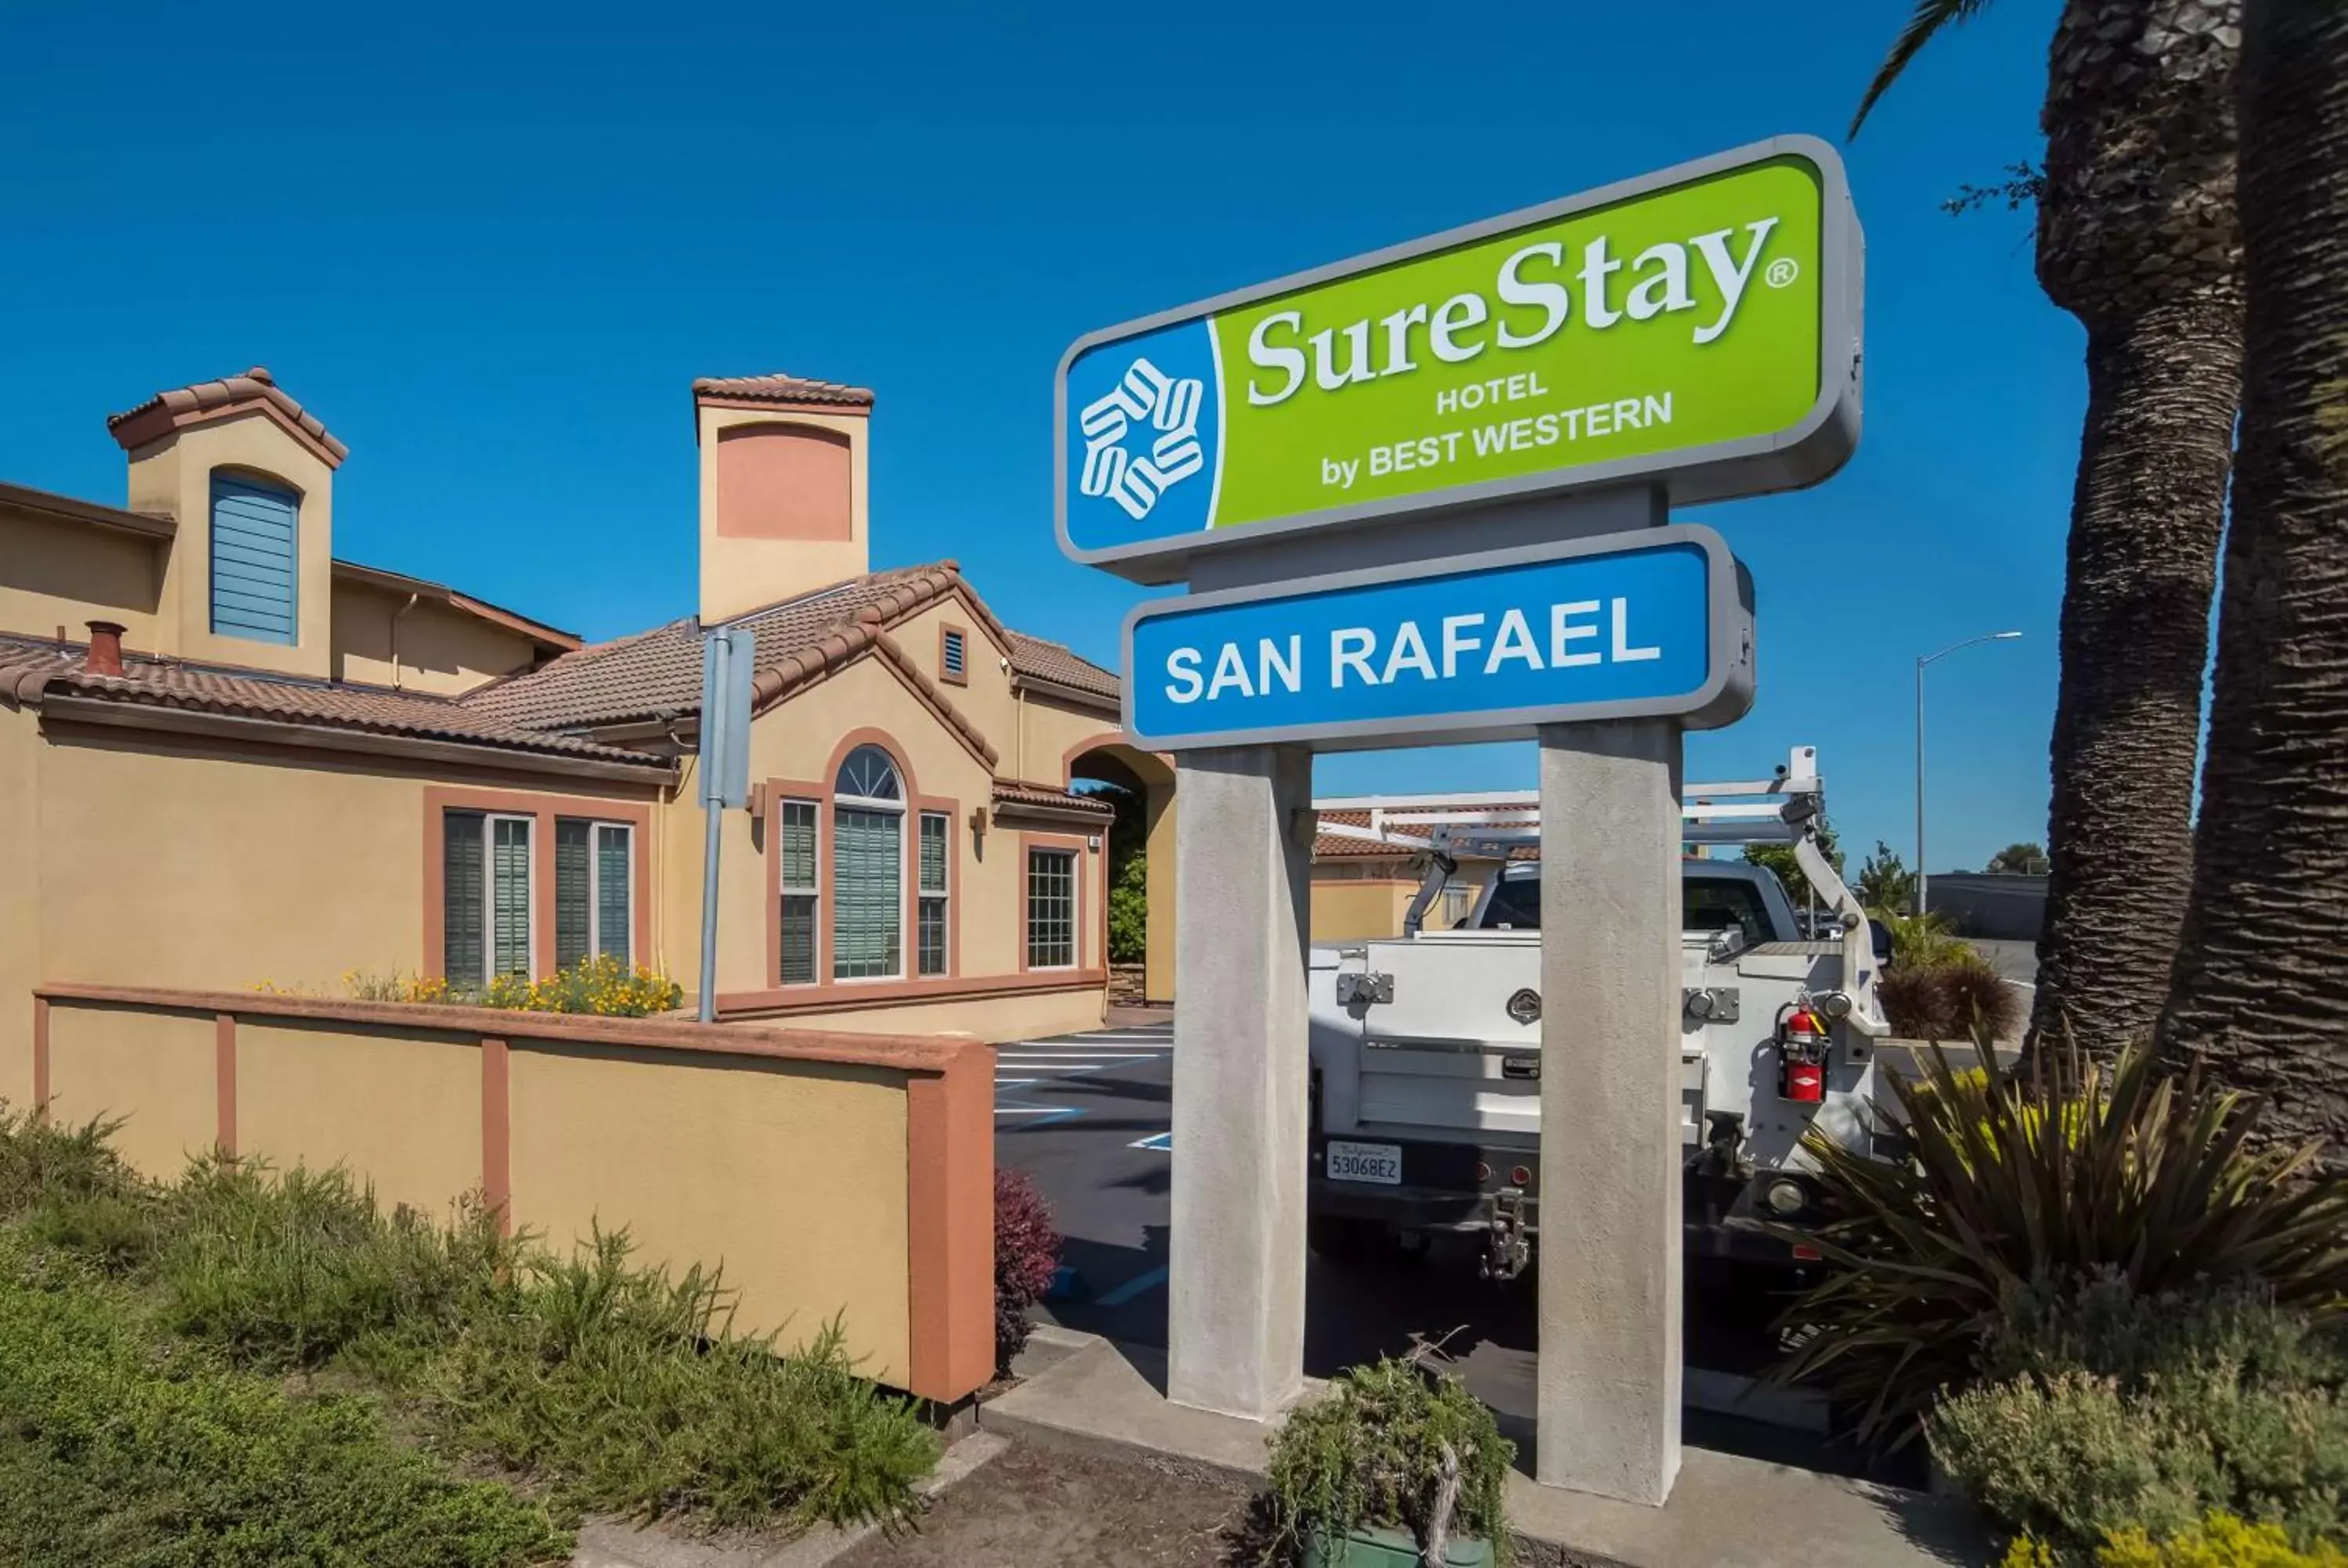 Property Building in SureStay Hotel by Best Western San Rafael